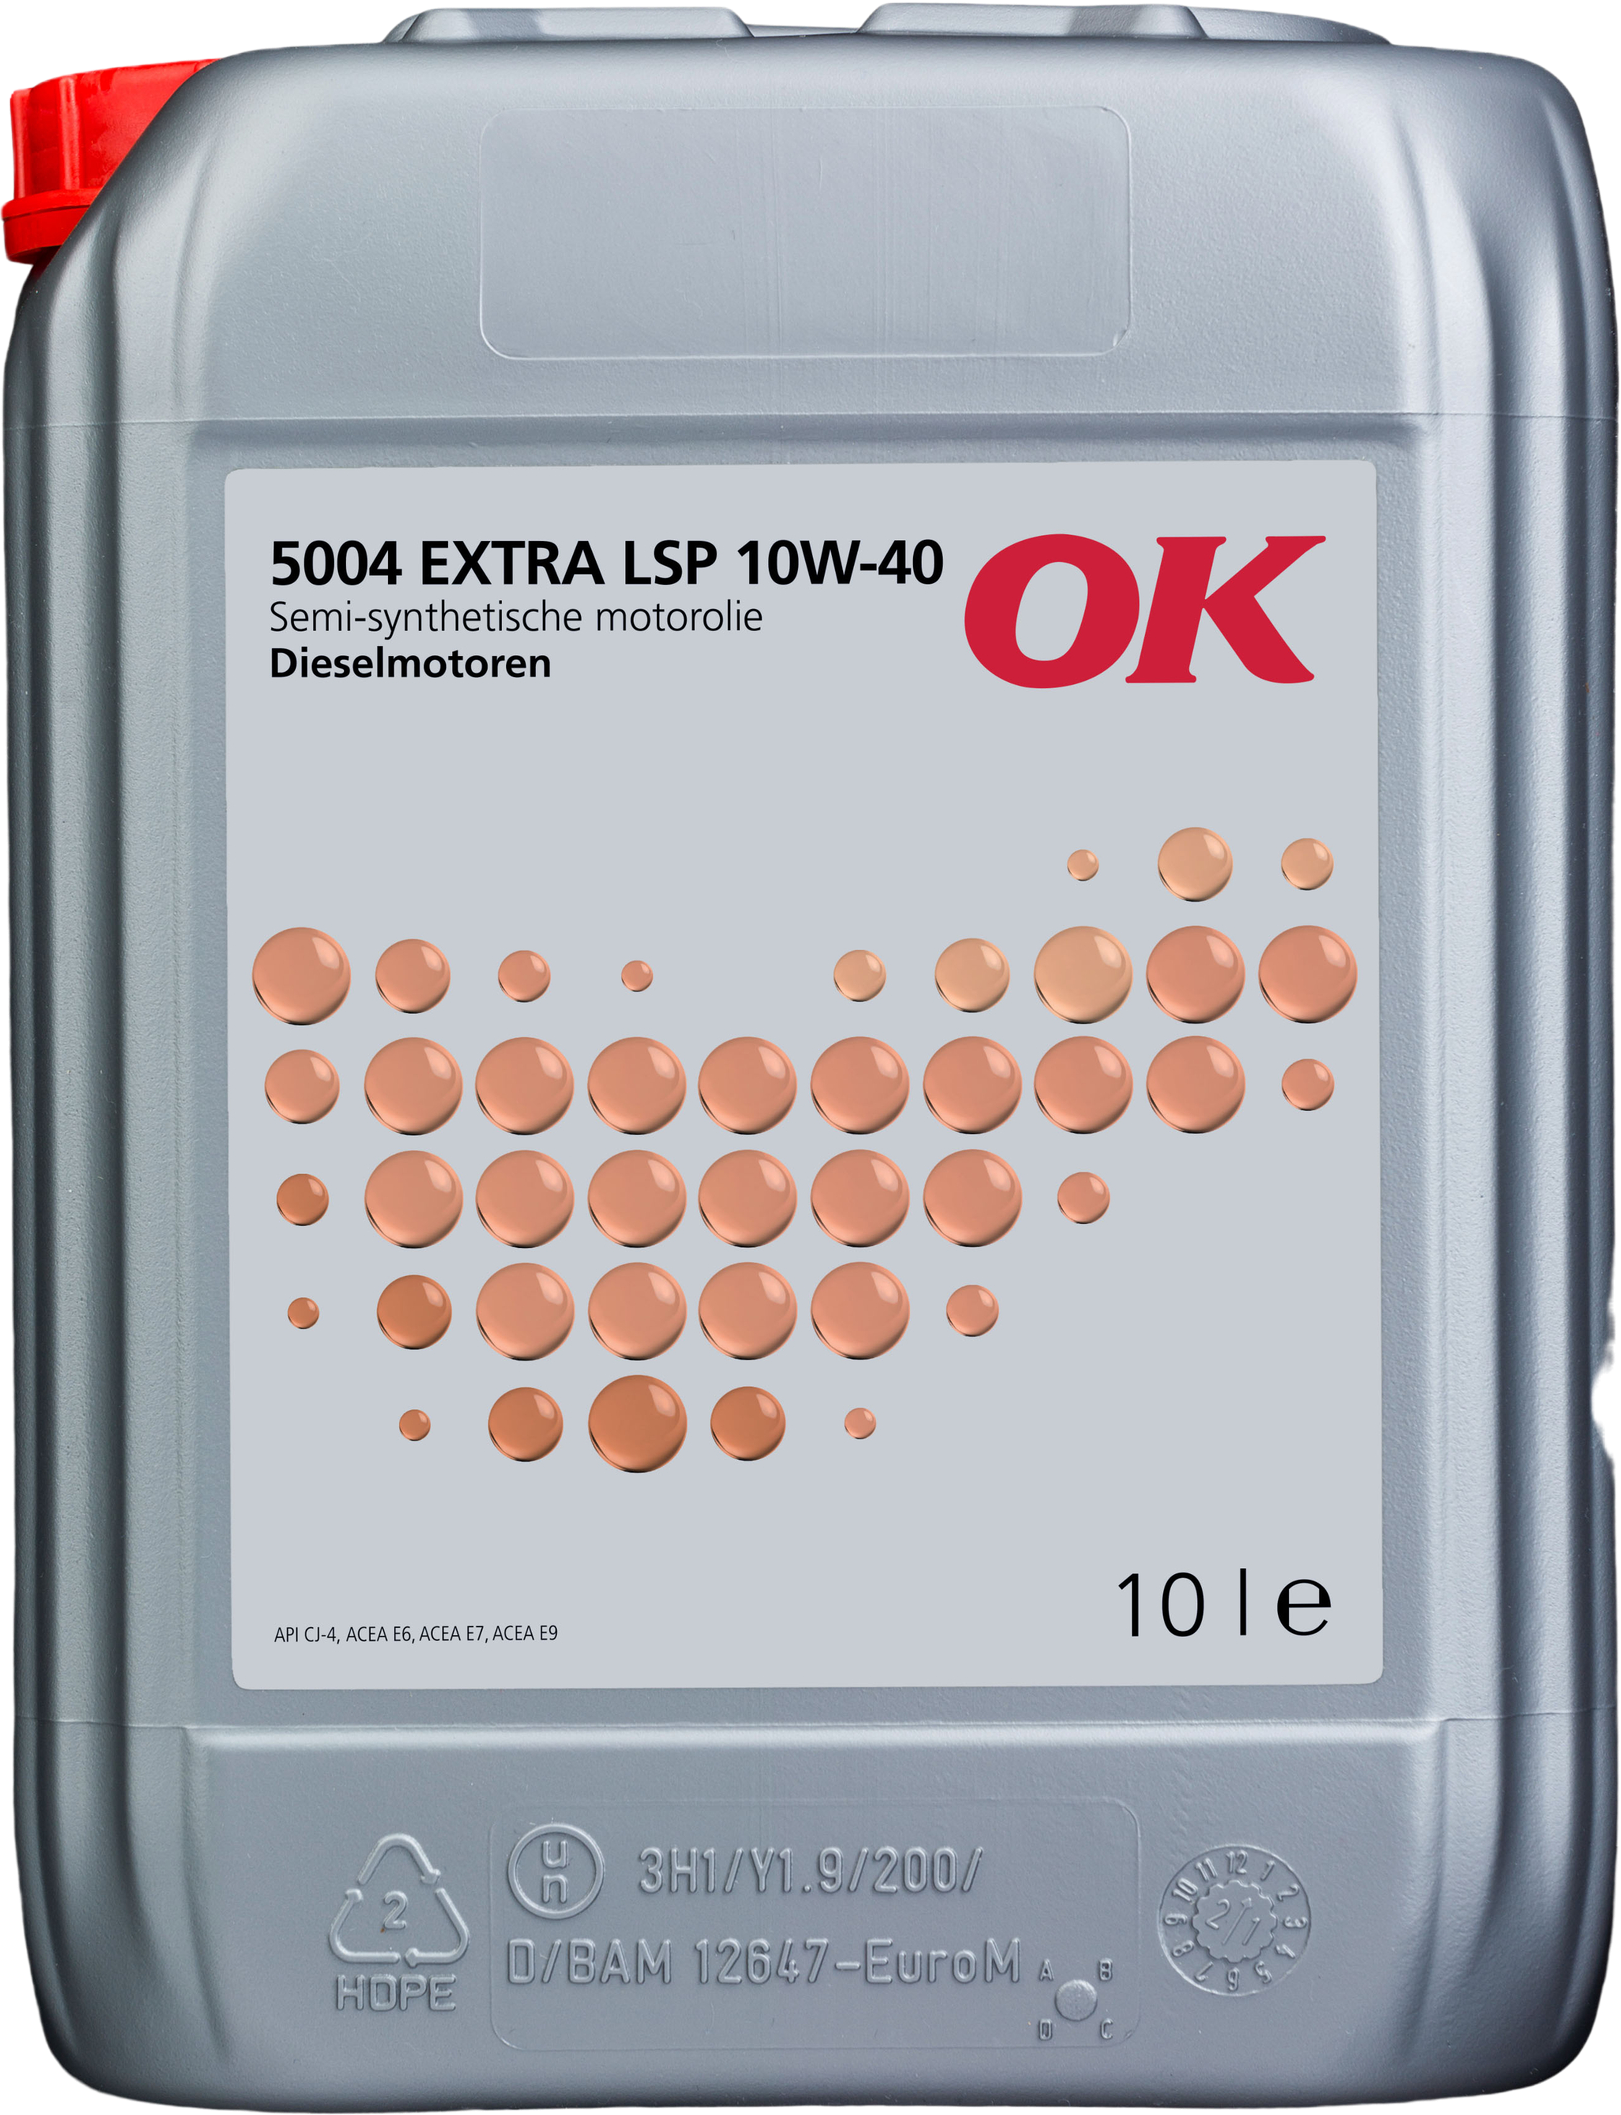 O2120-10 OK 5004 EXTRA LSP 10W-40 is een zeer hoogwaardige Low-SAPS motorolie, op basis van synthetische en minerale basisolie.